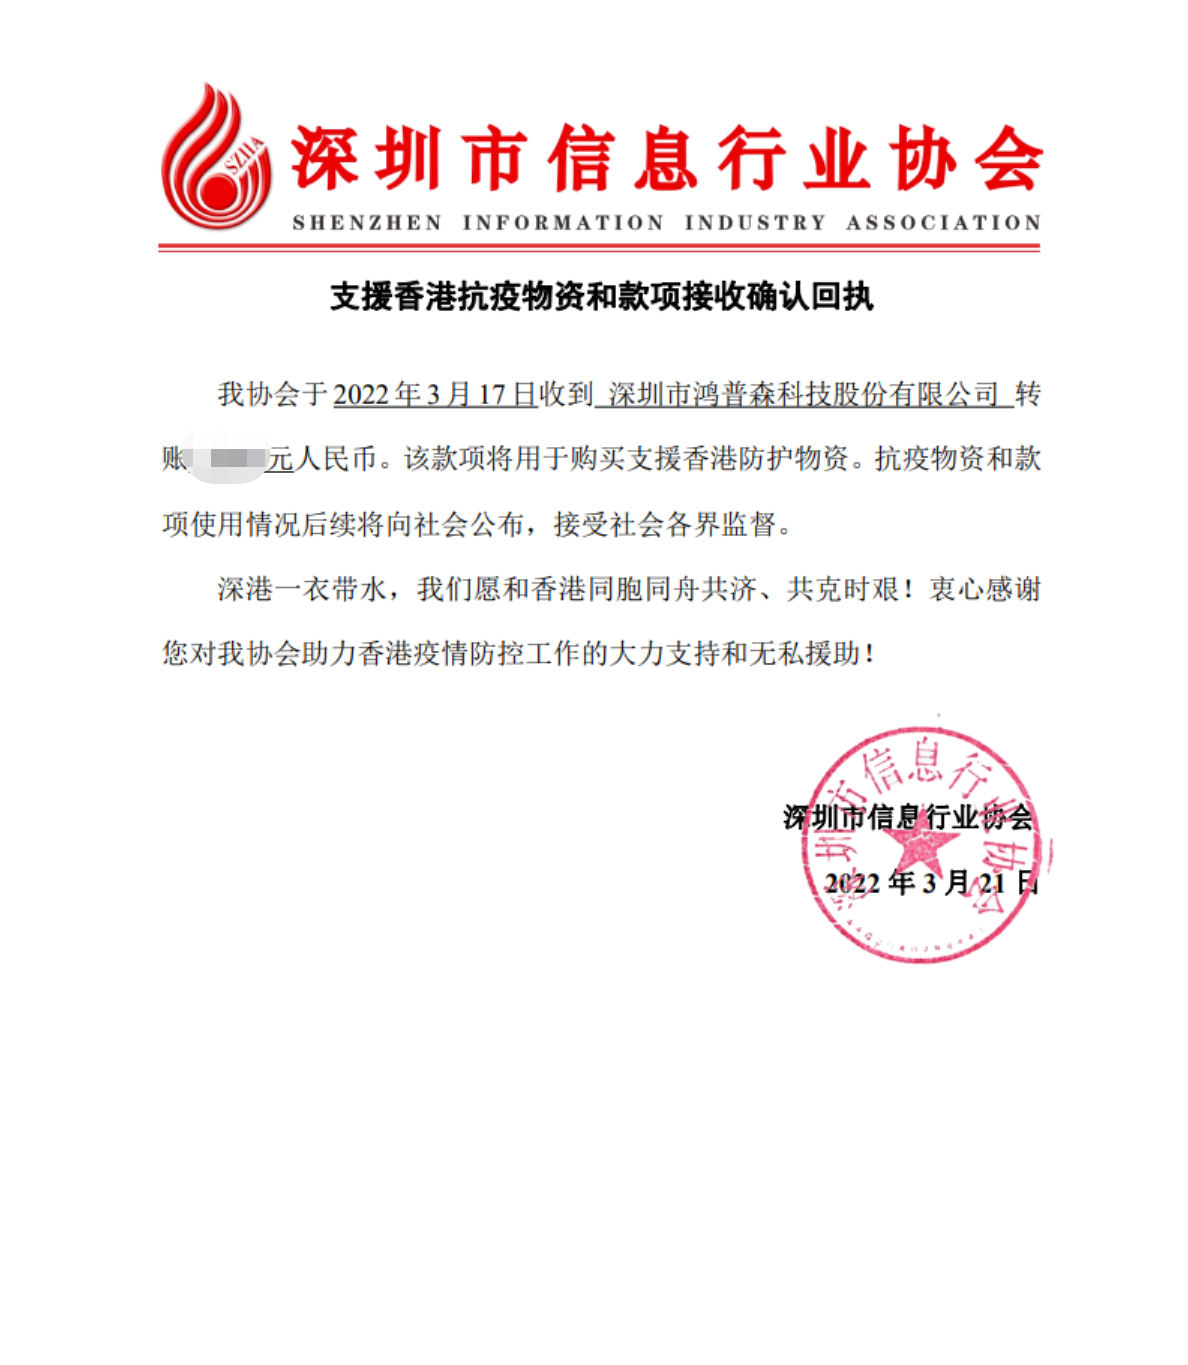 2022年3月21日支援香港抗議物資證明